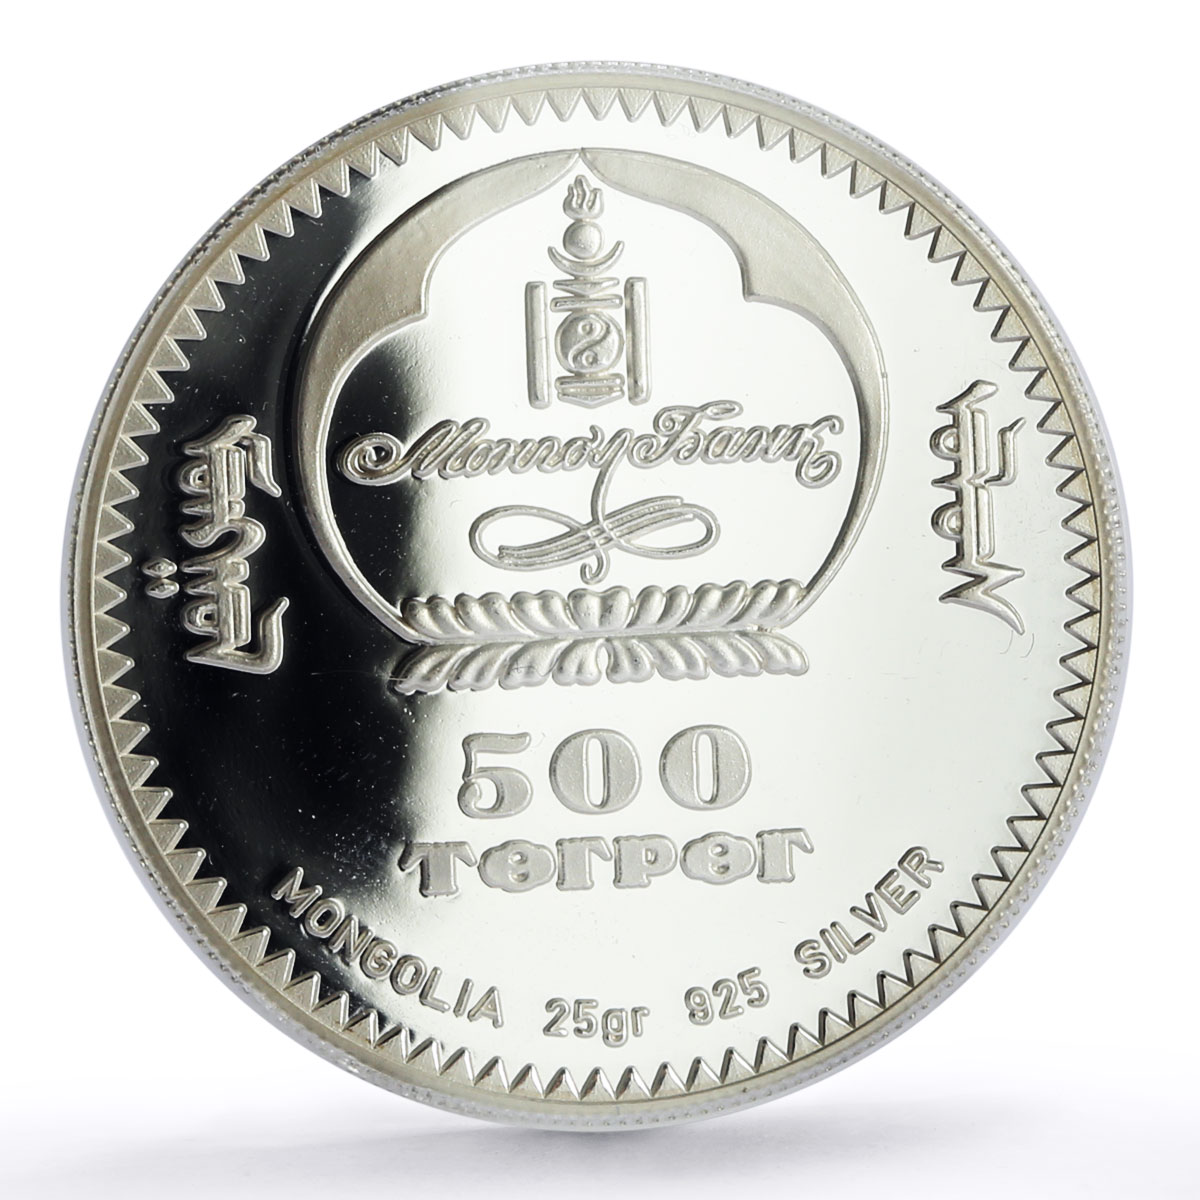 Mongolia 500 togrog Undur Geghen Zanabazar Buddhism PR69 PCGS silver coin 1999